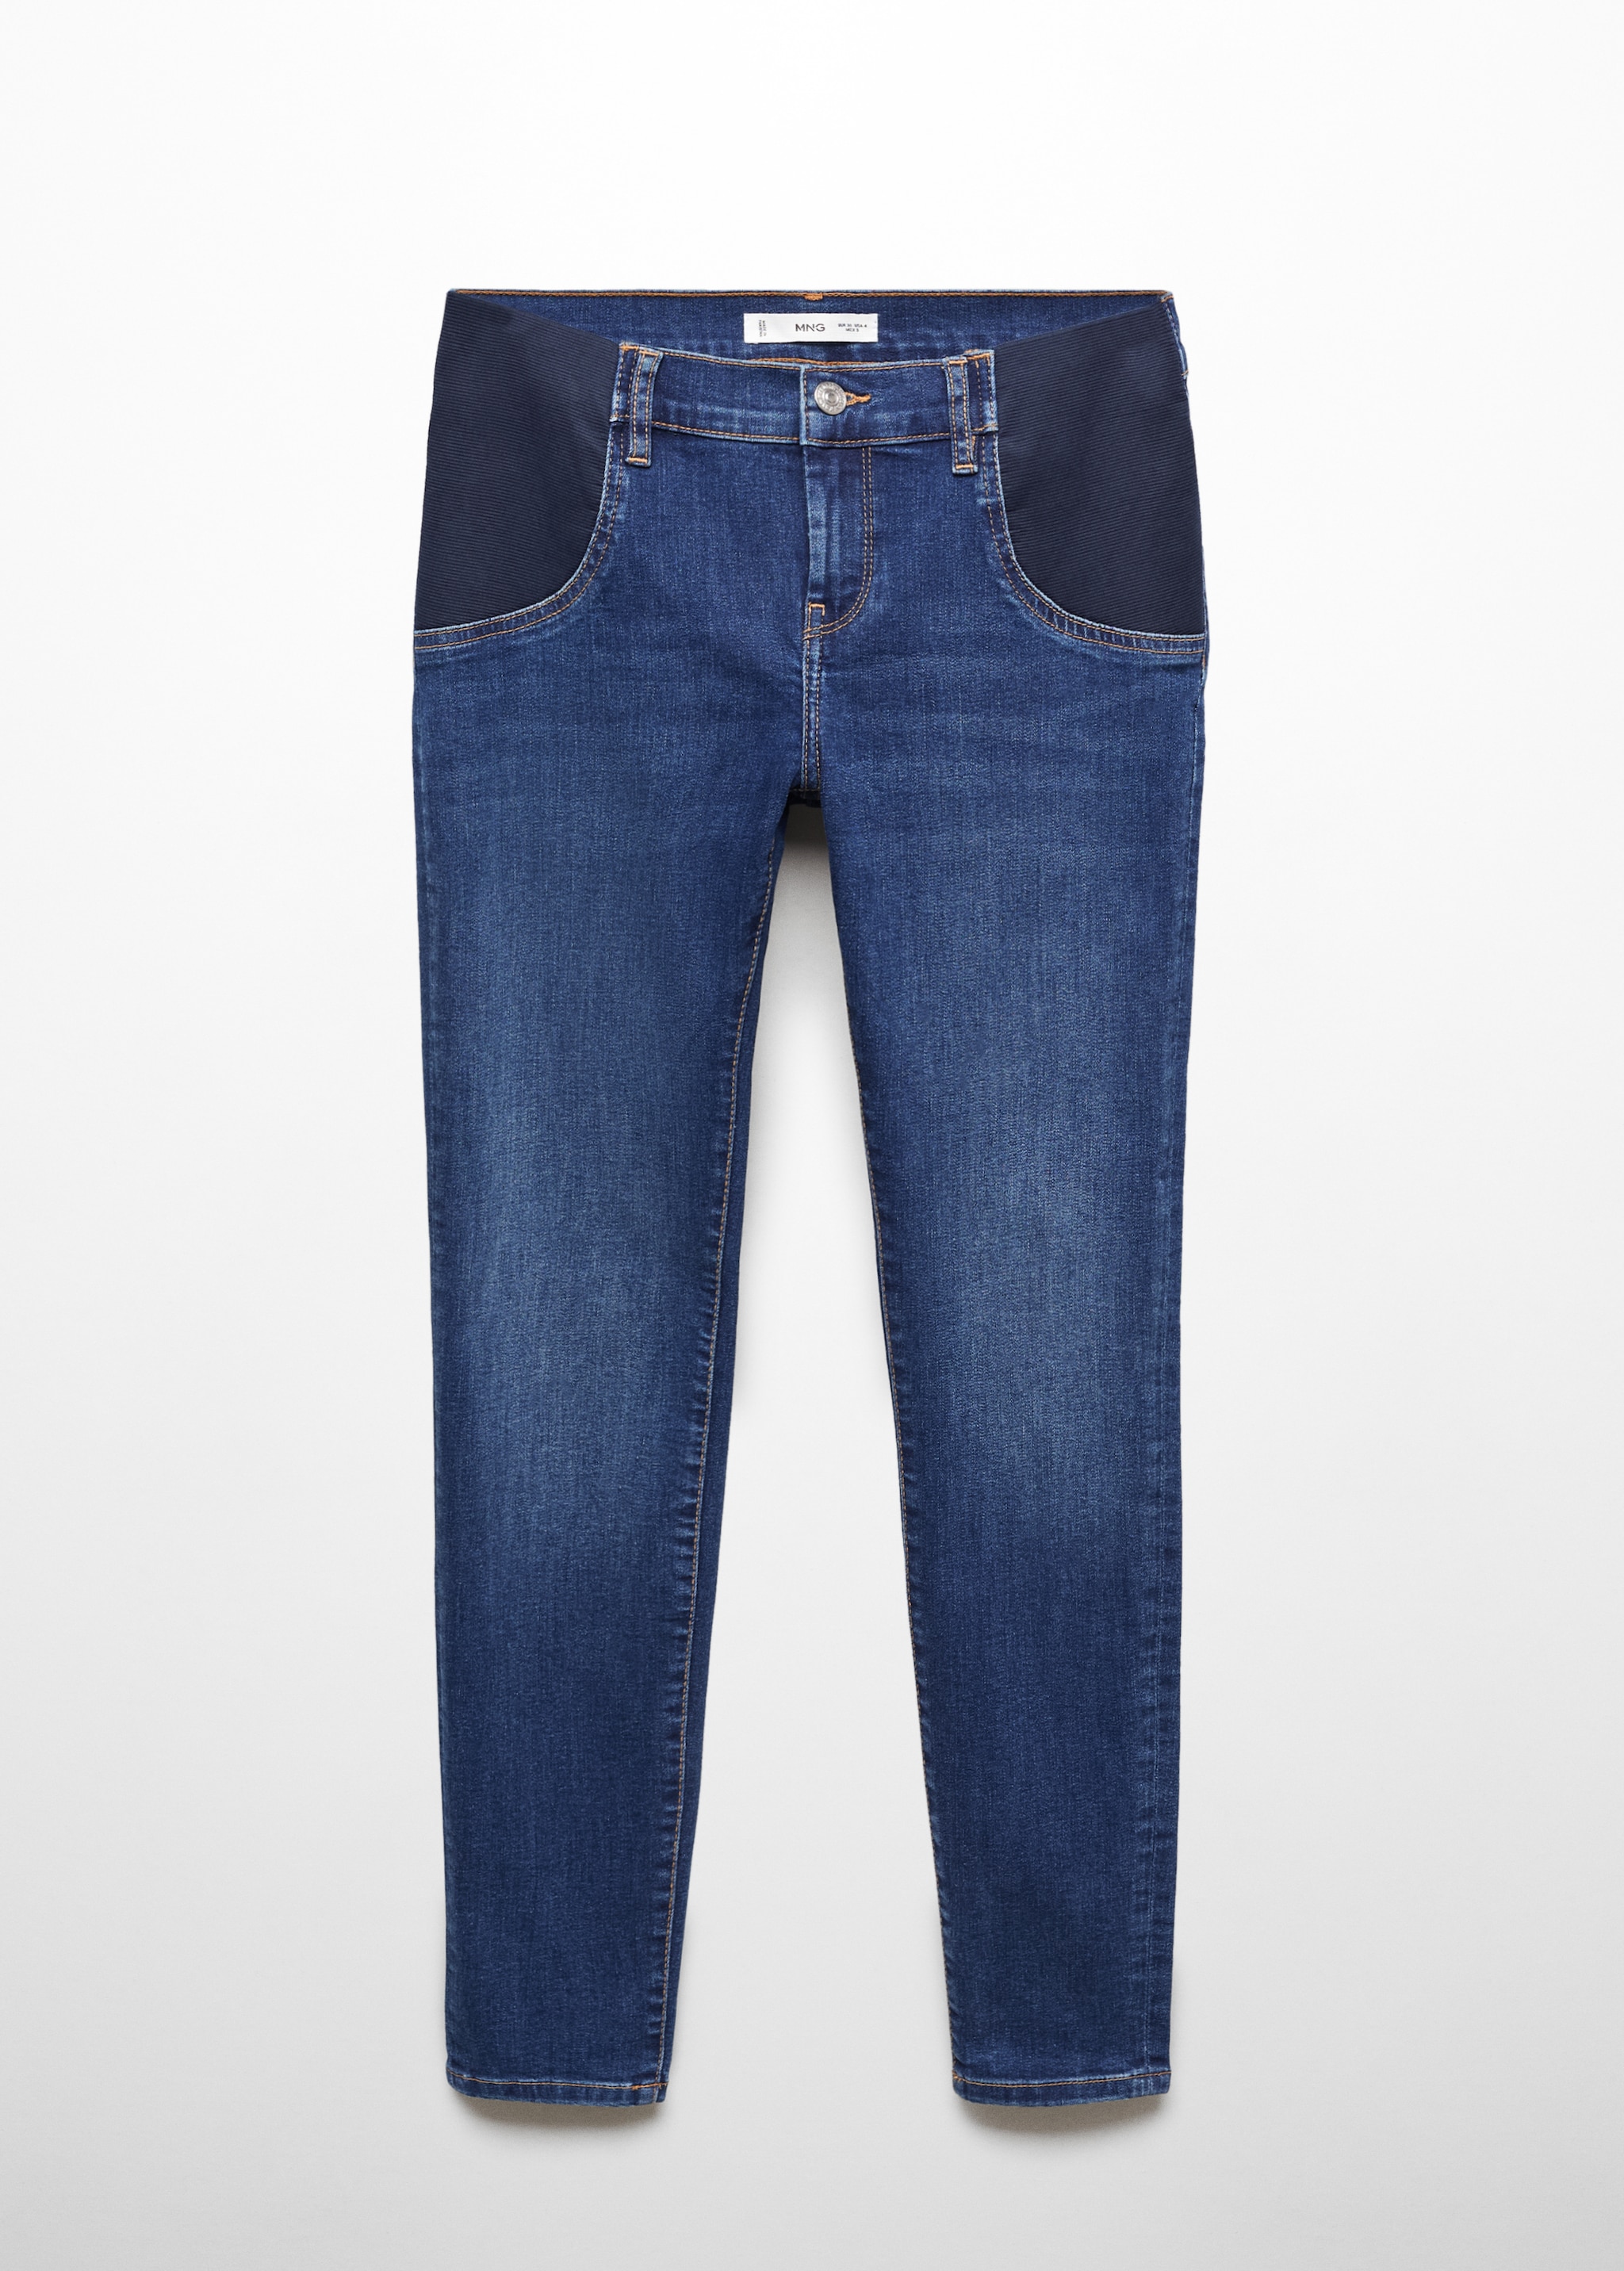 Jeans skinny premamá - Artículo sin modelo